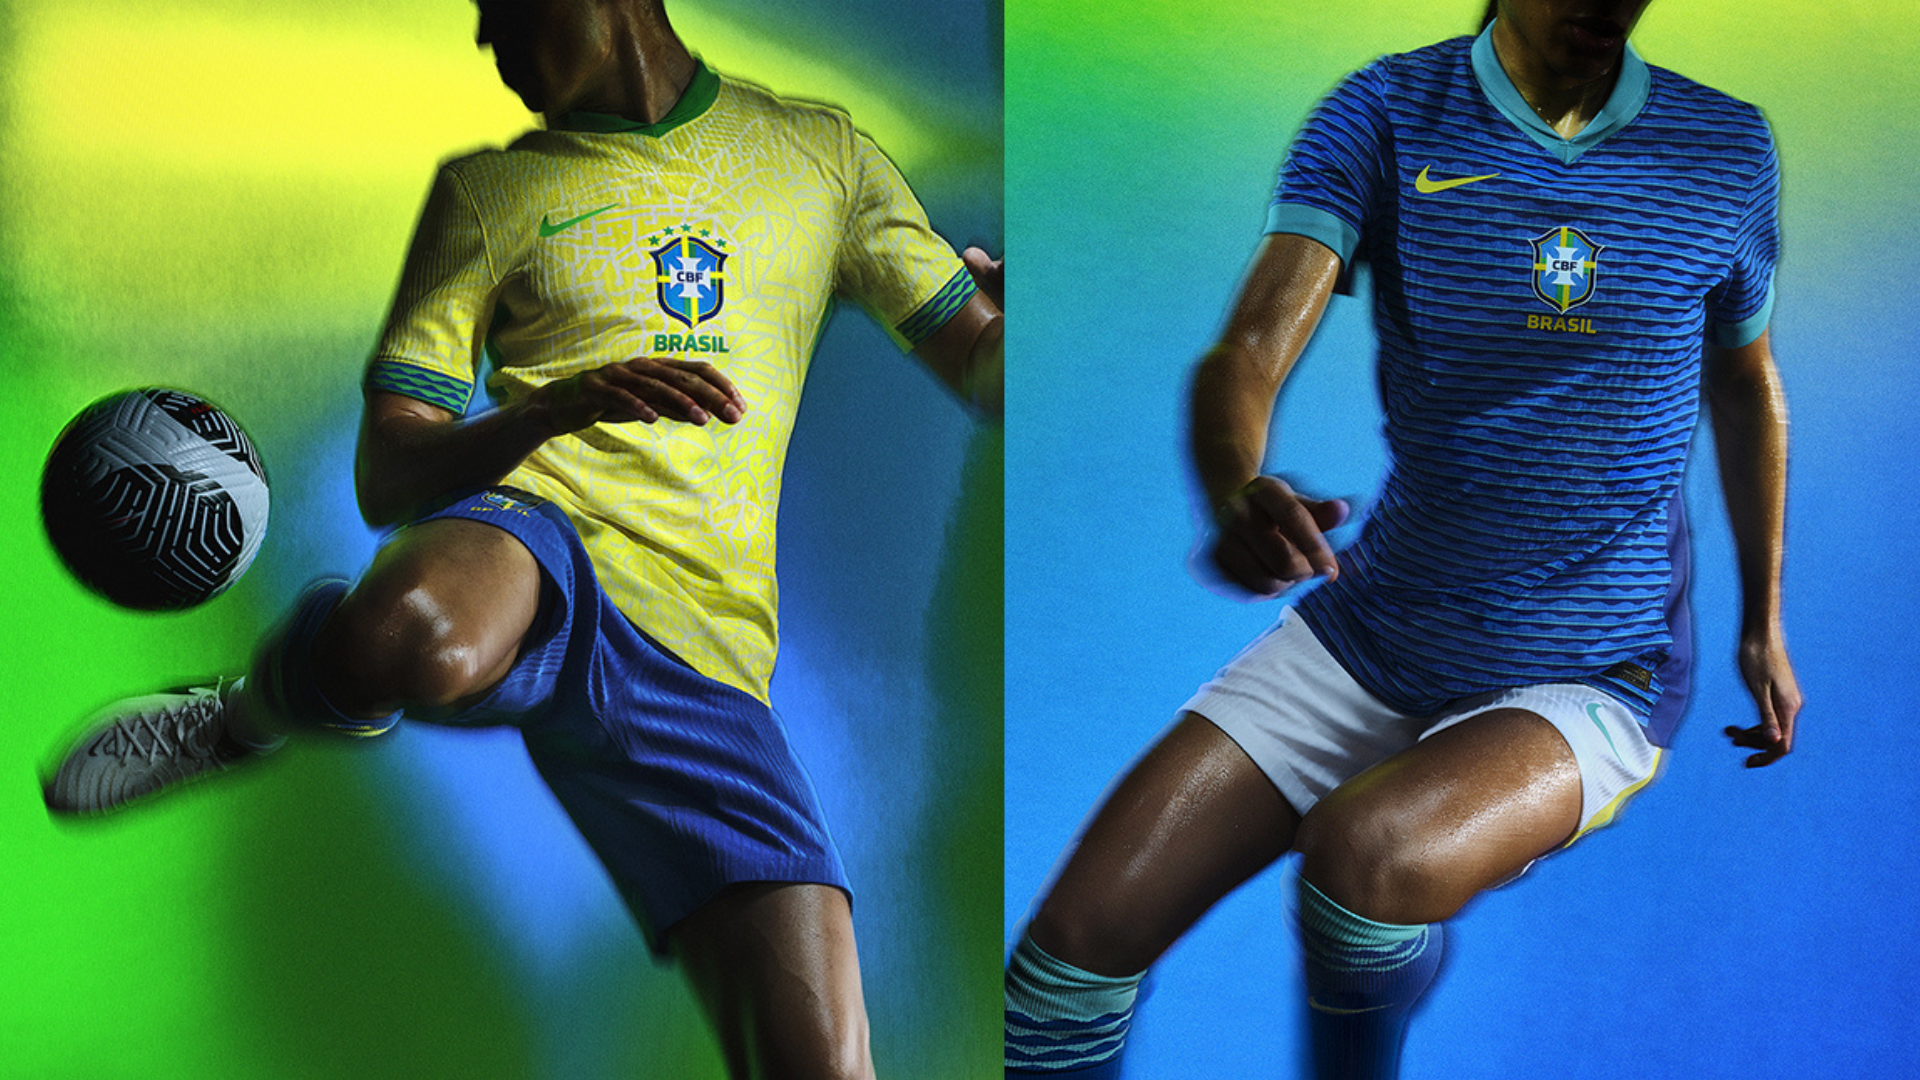 Nike e CBF apresentam novos uniformes da Seleção Brasileira inspirados na cultura do país